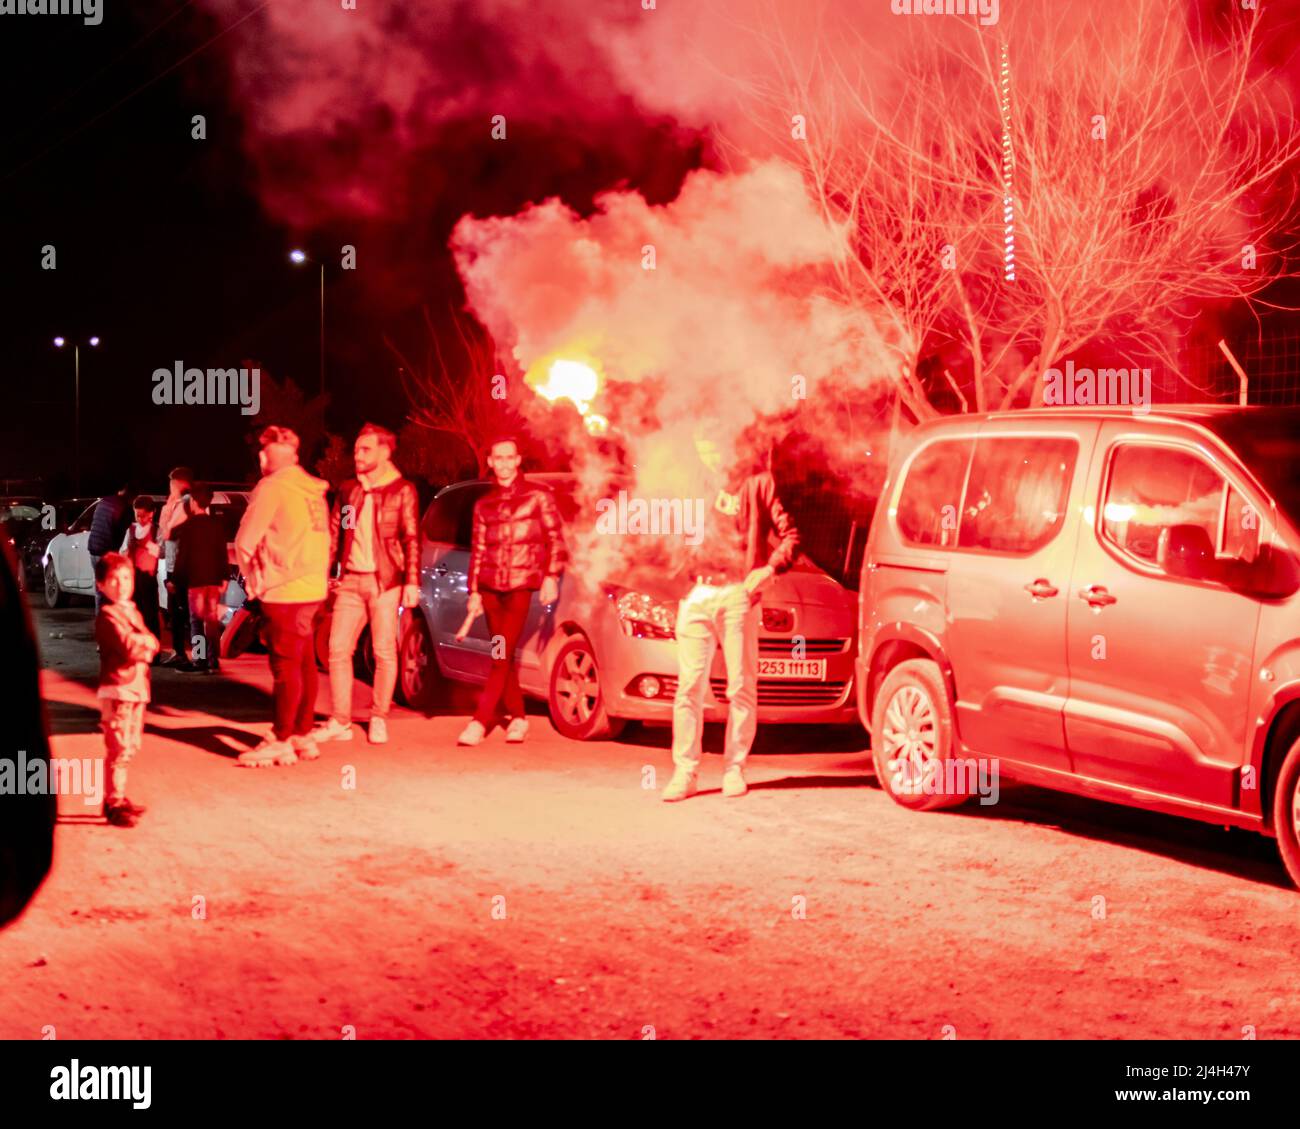 Un gruppo di giovani ragazzi che giocano con una granata di fumo rosso di notte, fumoso vapore di haze. Auto parcheggiate e un ragazzo che tiene la granata con il braccio in aria. Foto Stock